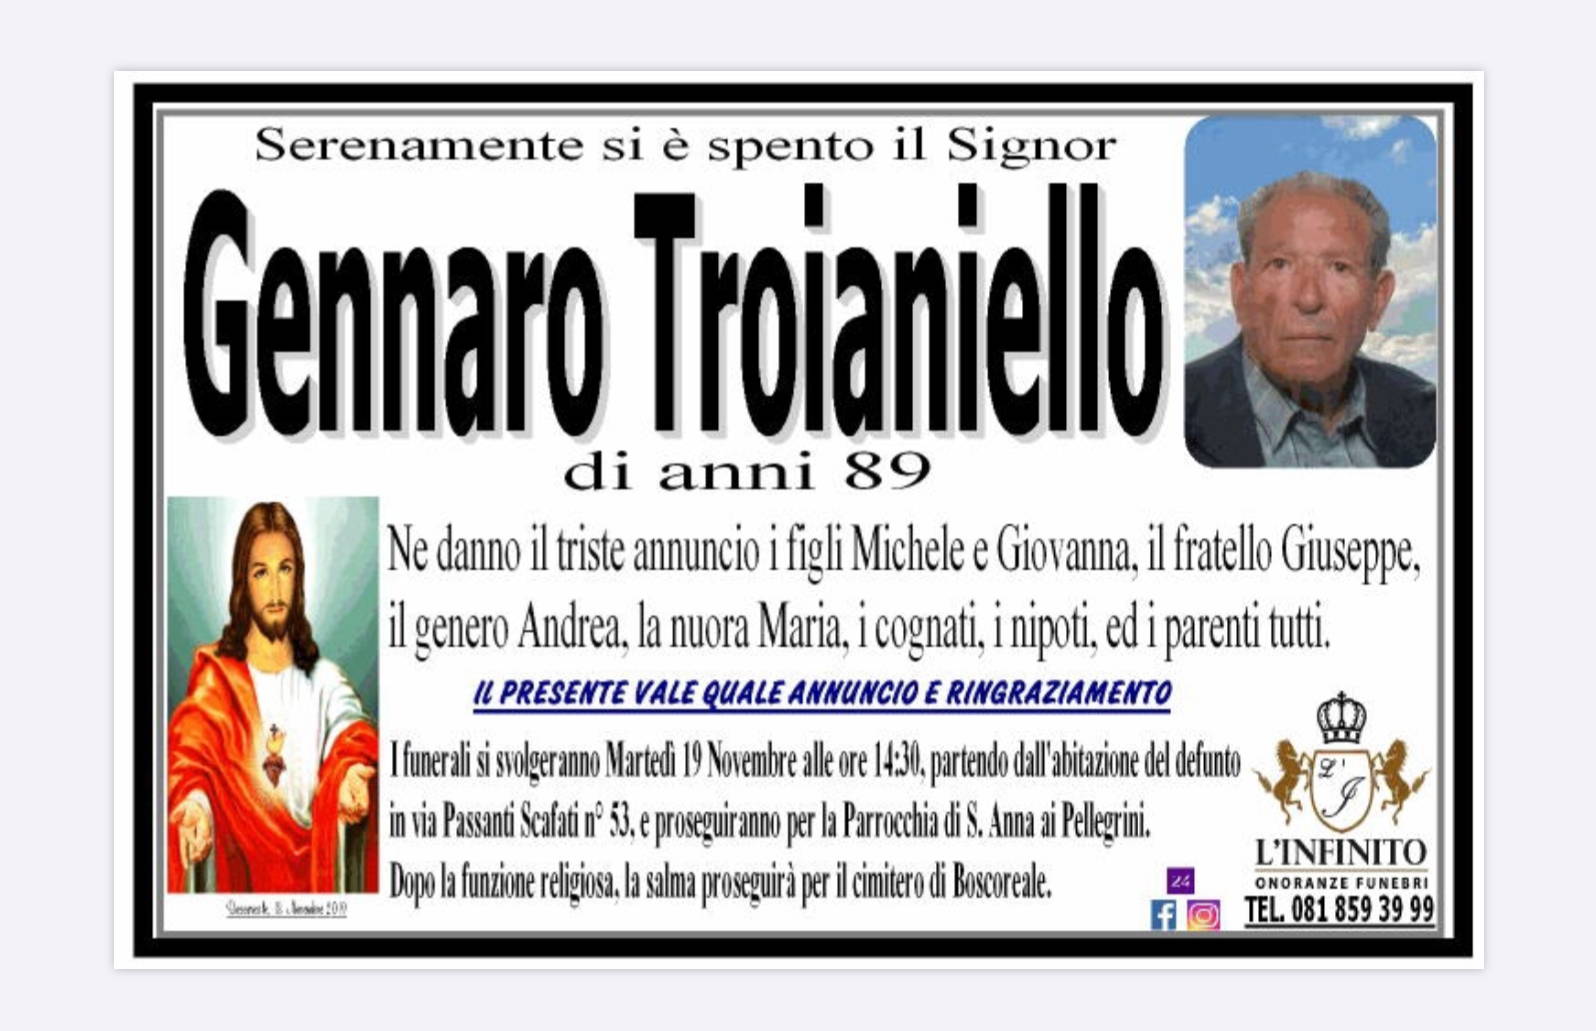 Gennaro Troianiello